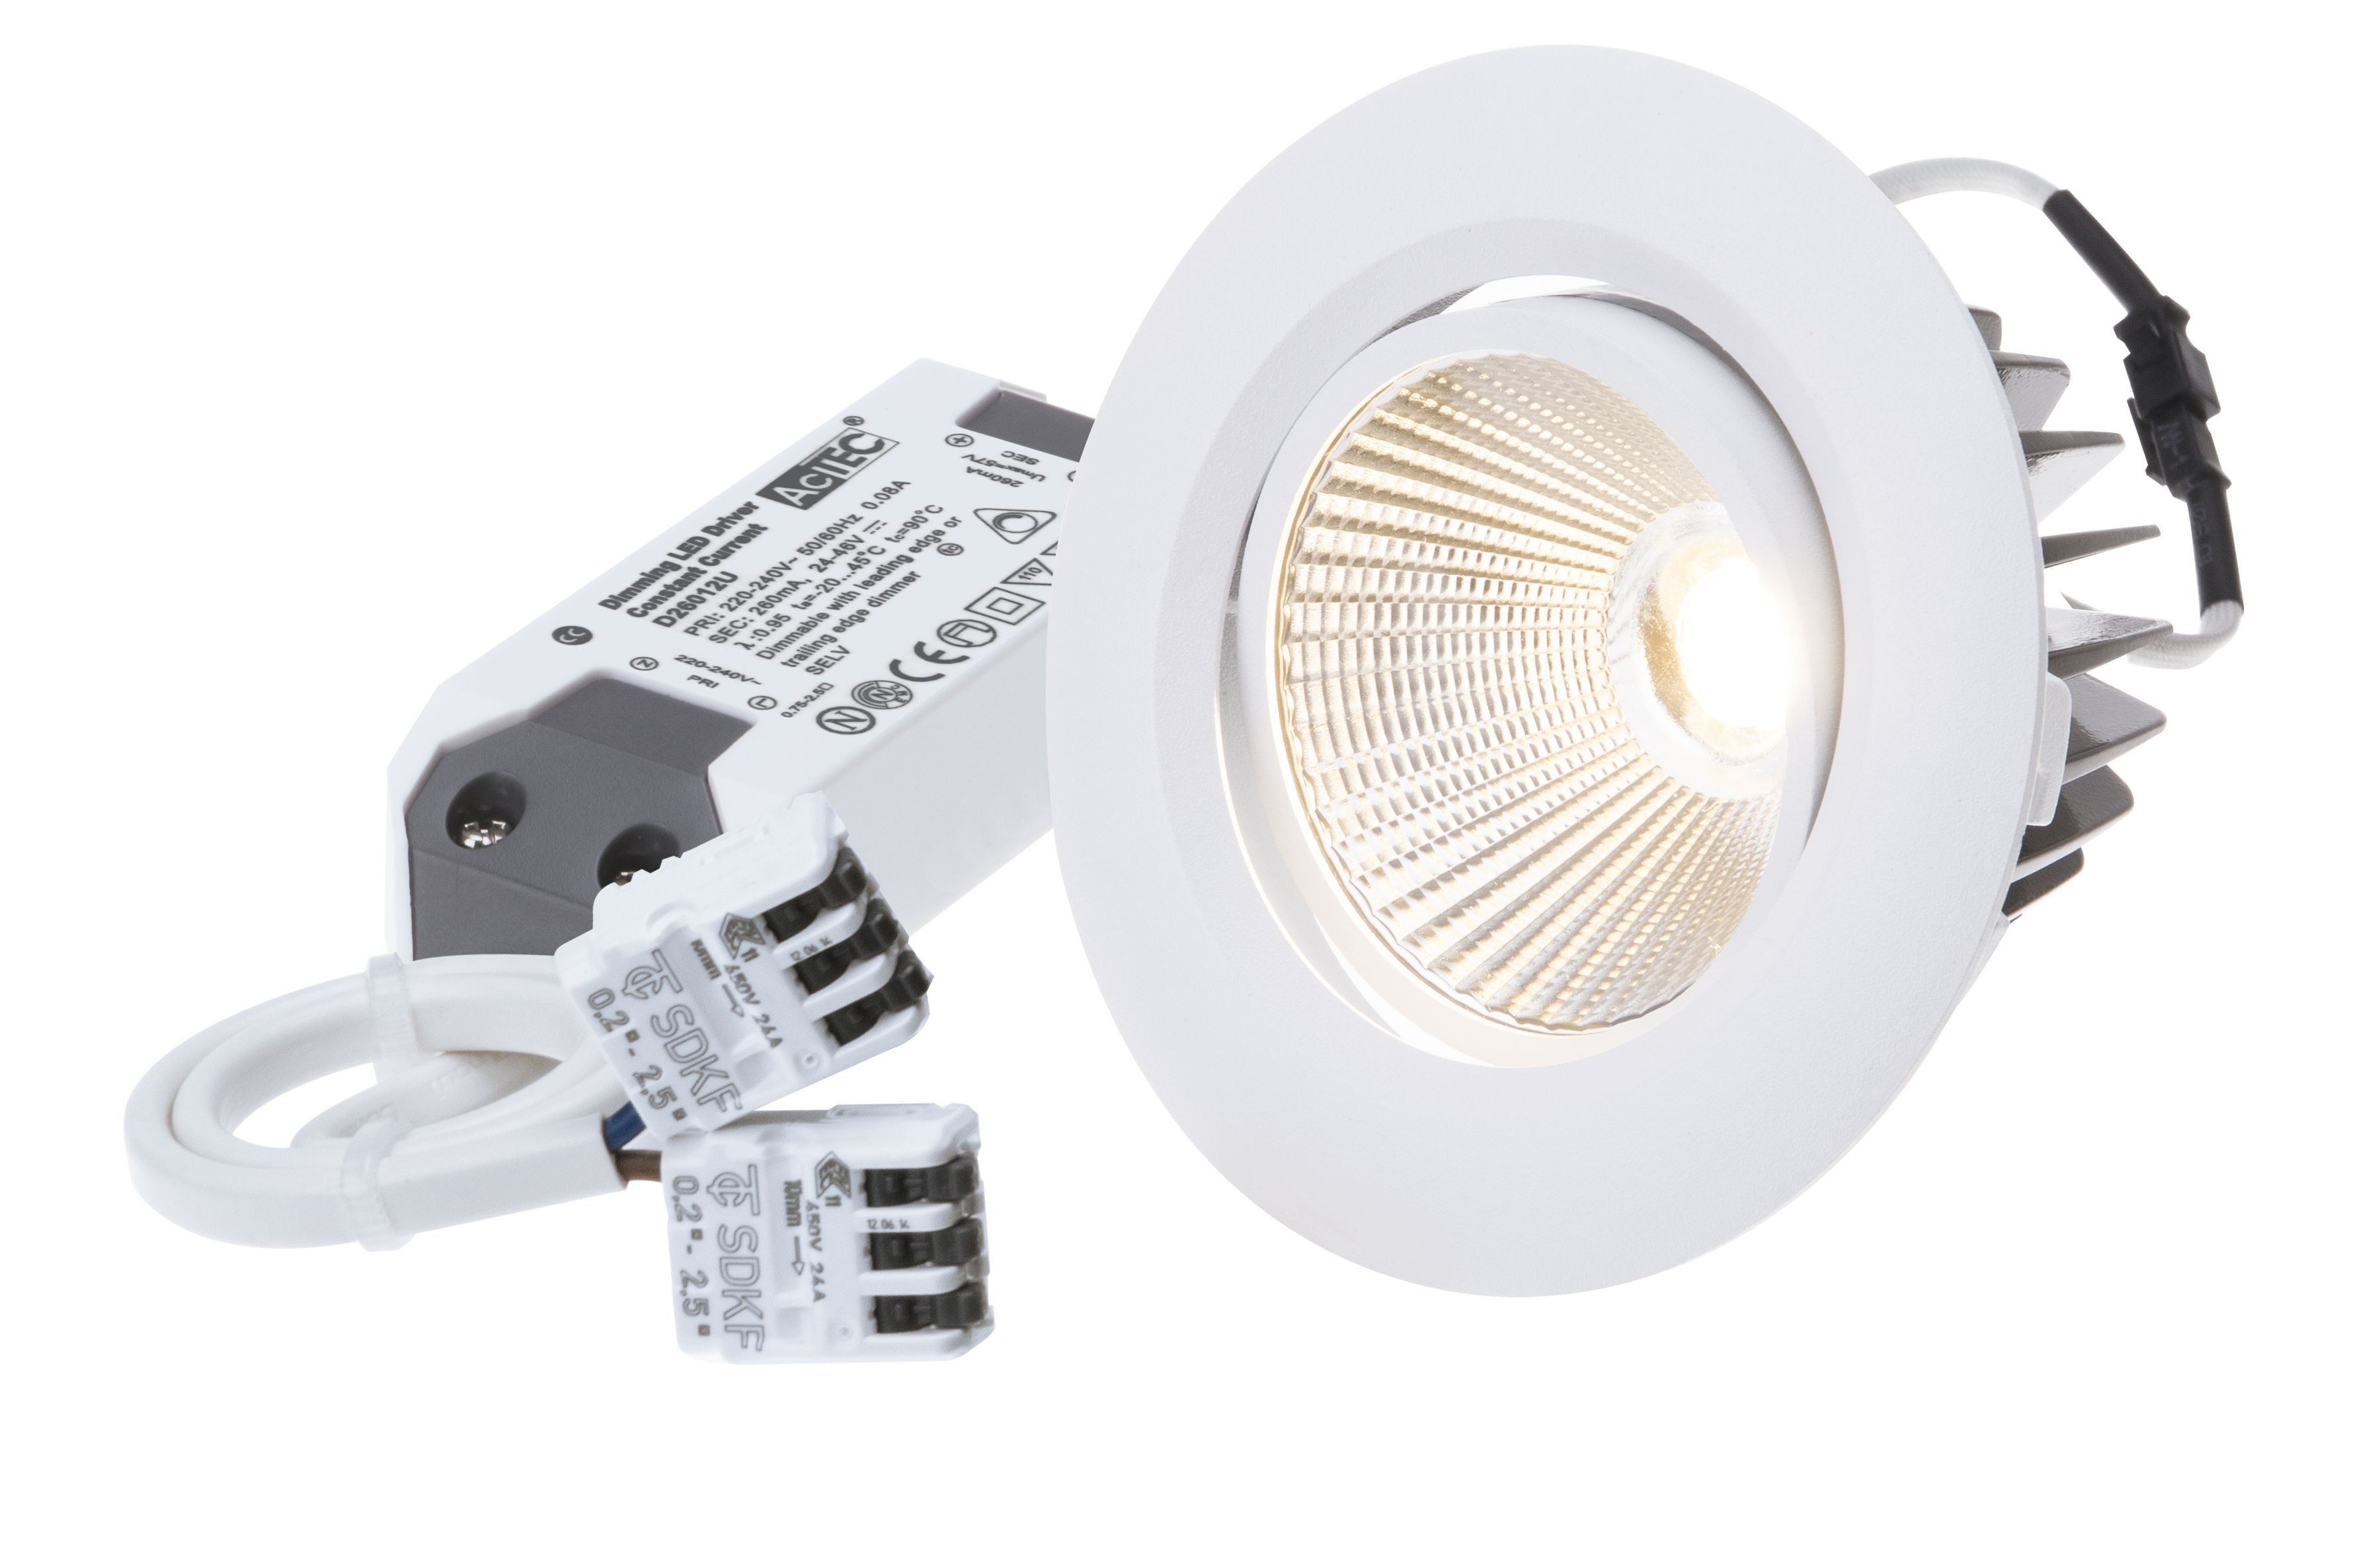 LED-Einbauspot AXO weiss 2700K 830lm 38°